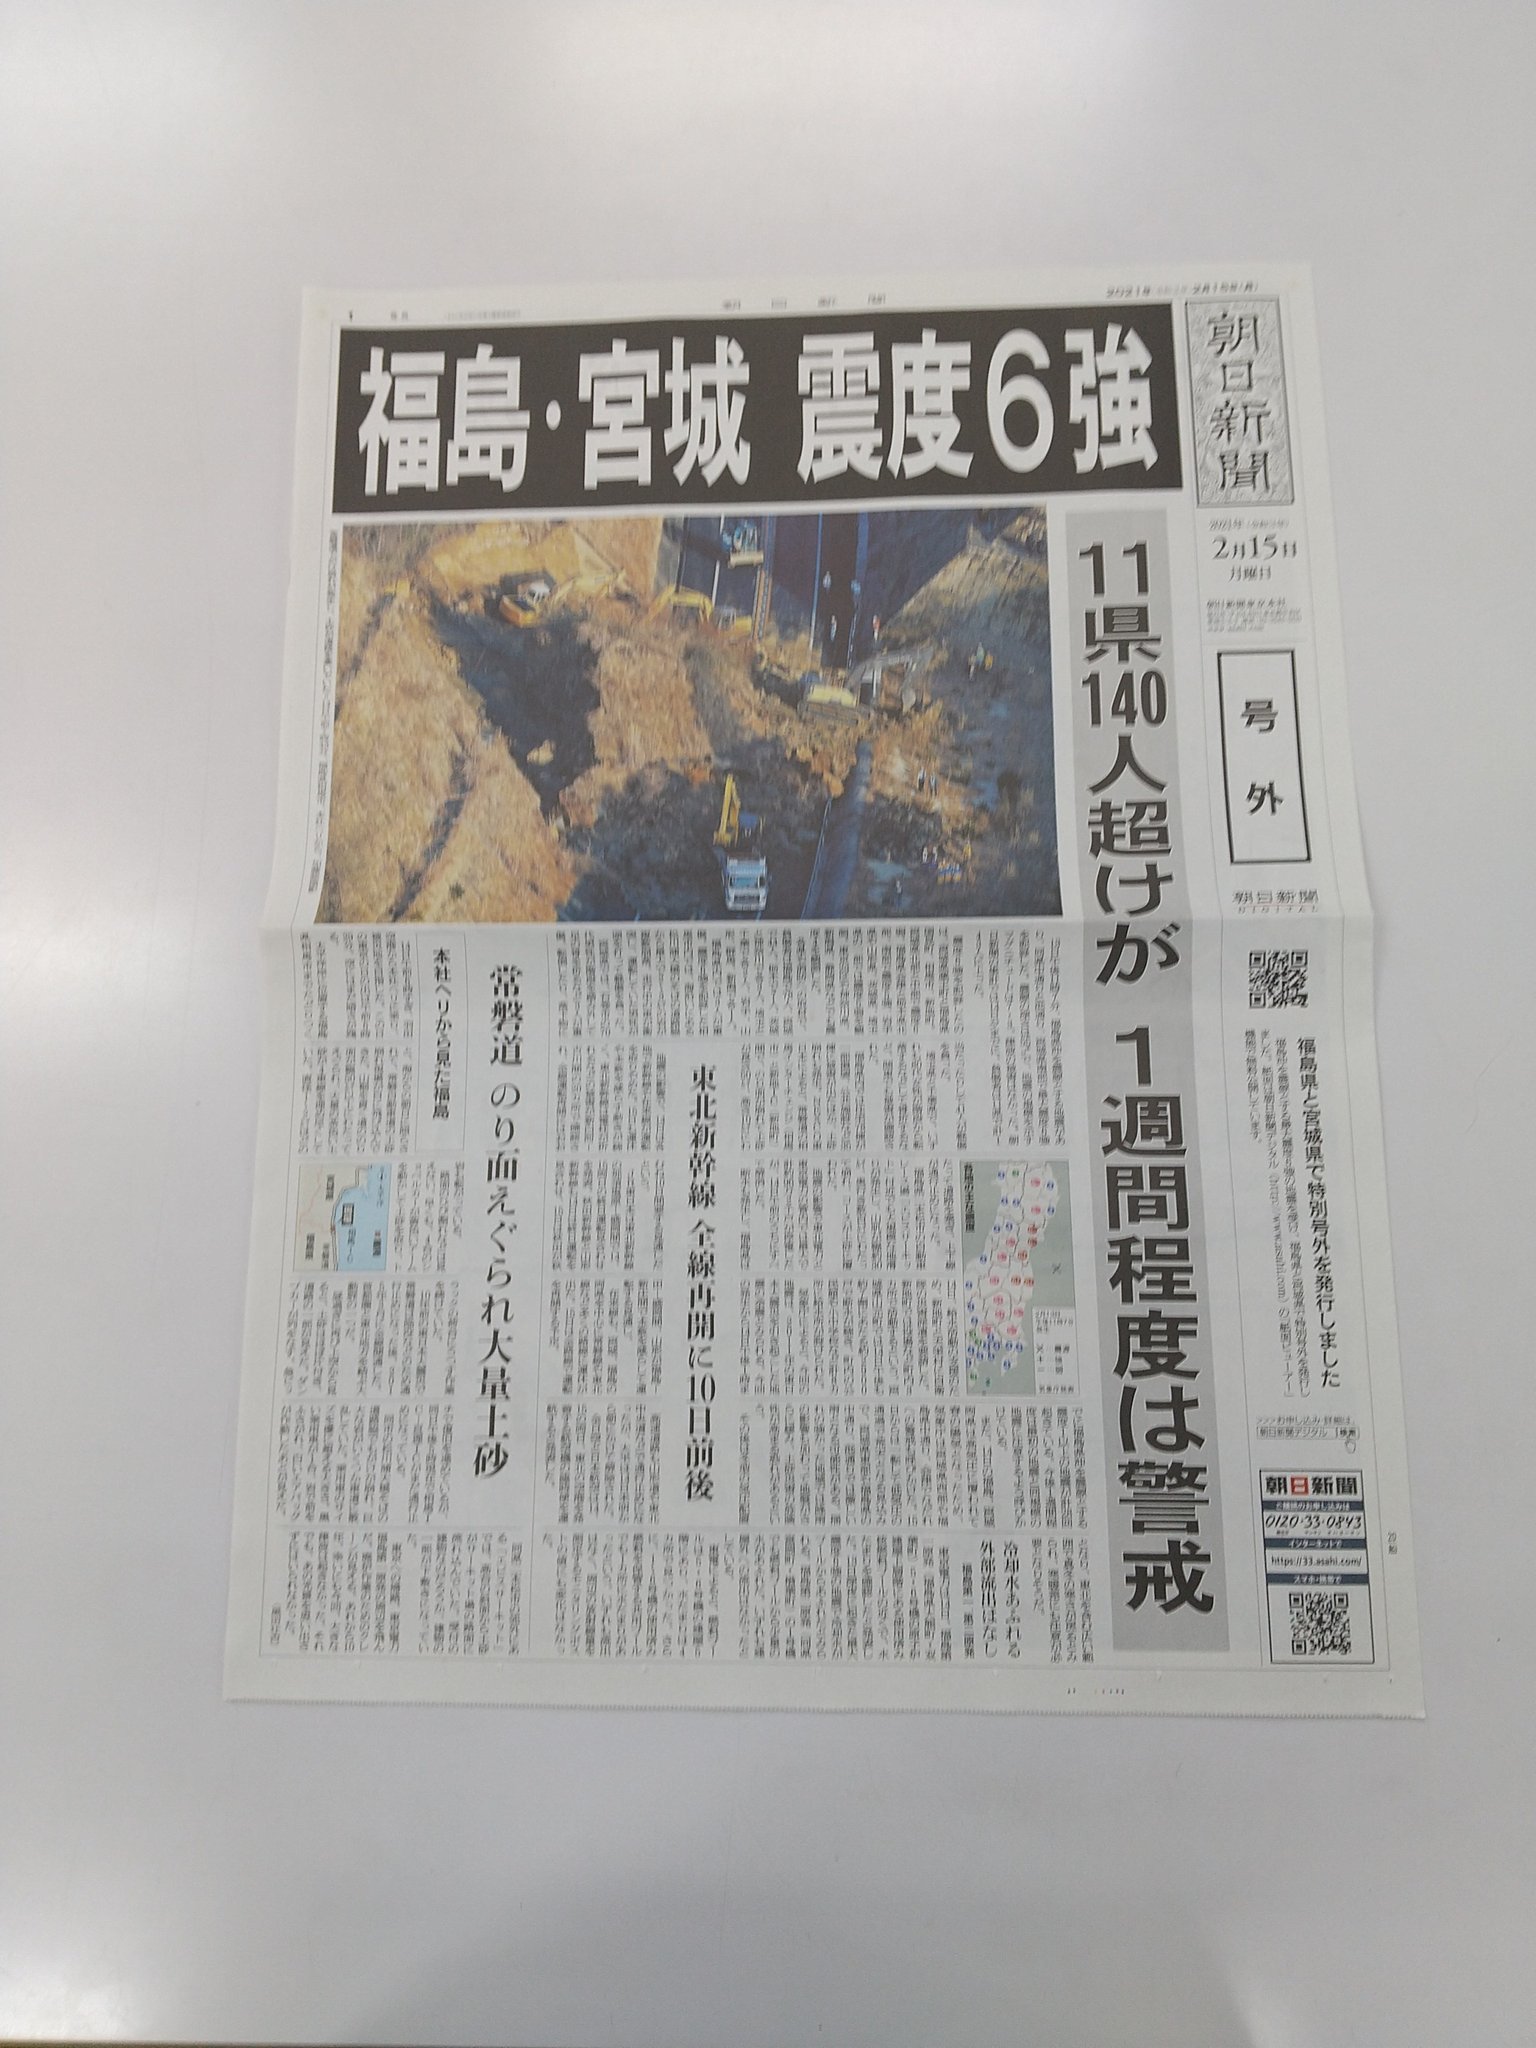 朝日新聞福島総局 本日は新聞休刊日 福島県沖での地震を受け ６ページの号外を福島と宮城の皆さまに届けるために発行しました 雨が強くなってきています 被災された方はお気をつけください T Co Aqkuiy5251 Twitter